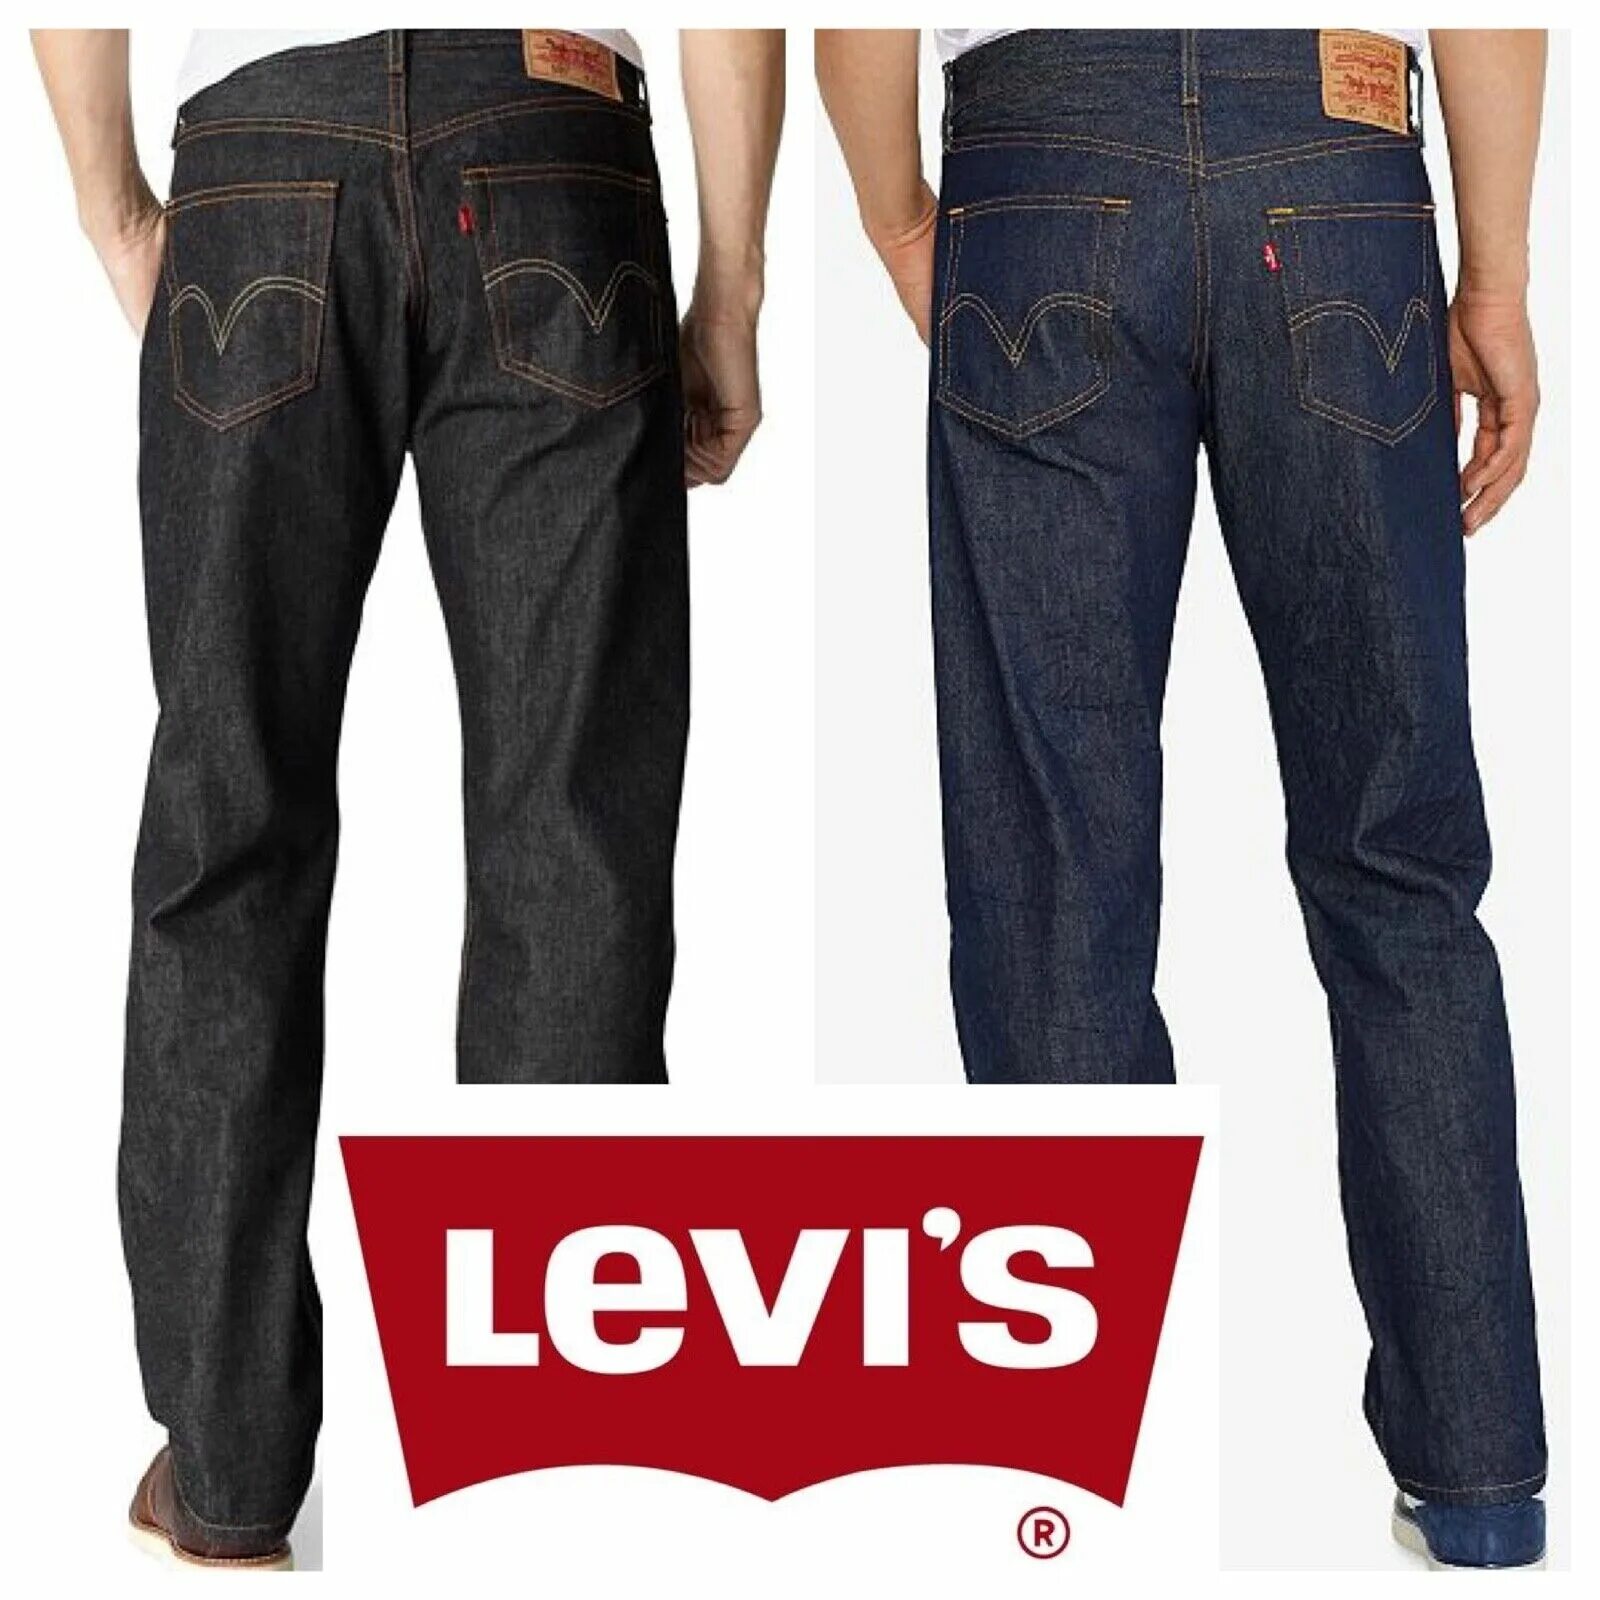 Levis 501 original. Levi's 501 Original Fit. Levis 501 Shrink to Fit. Levis 501 Original Fit Black. Levis 501 rigid Black Shrink-to-Fit.